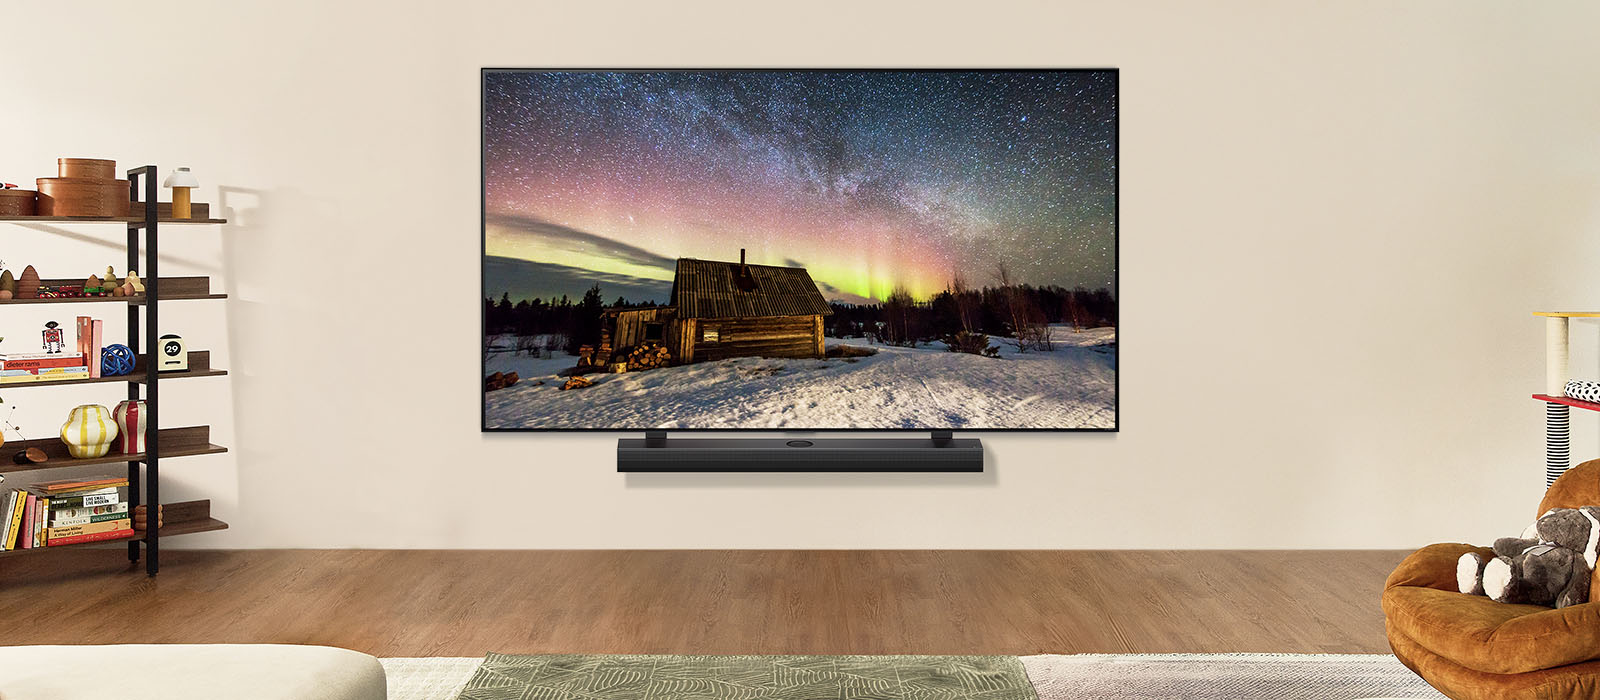 Televisor LG y barra de sonido LG en un espacio moderno durante el día. La imagen de la pantalla de la aurora boreal se muestra con los niveles de brillo ideales.